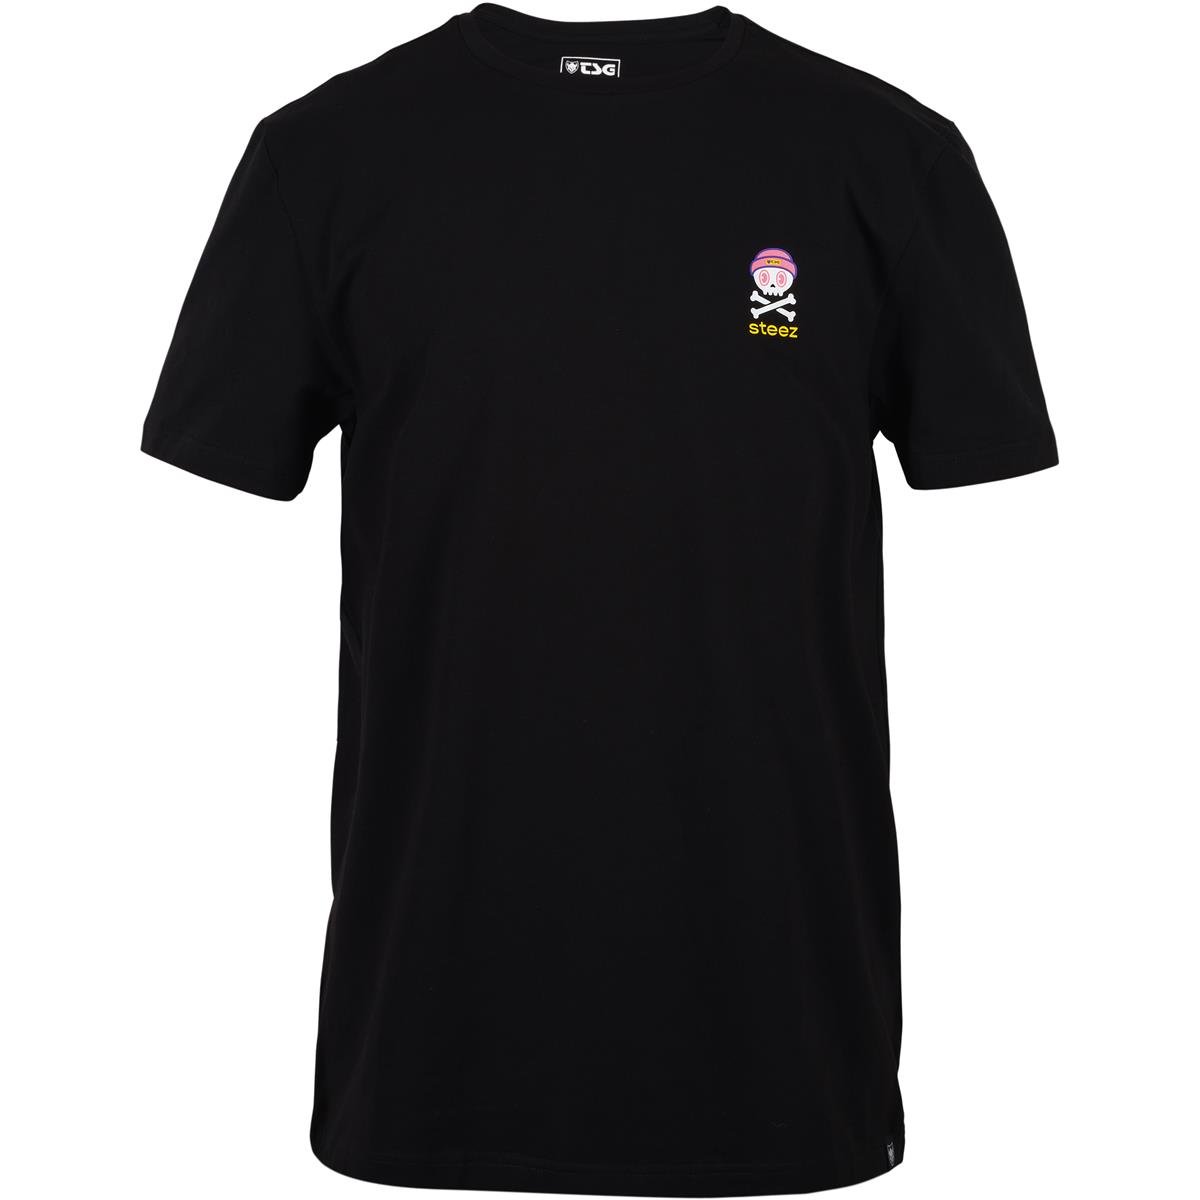 TSG T-Shirt Steezy Noir